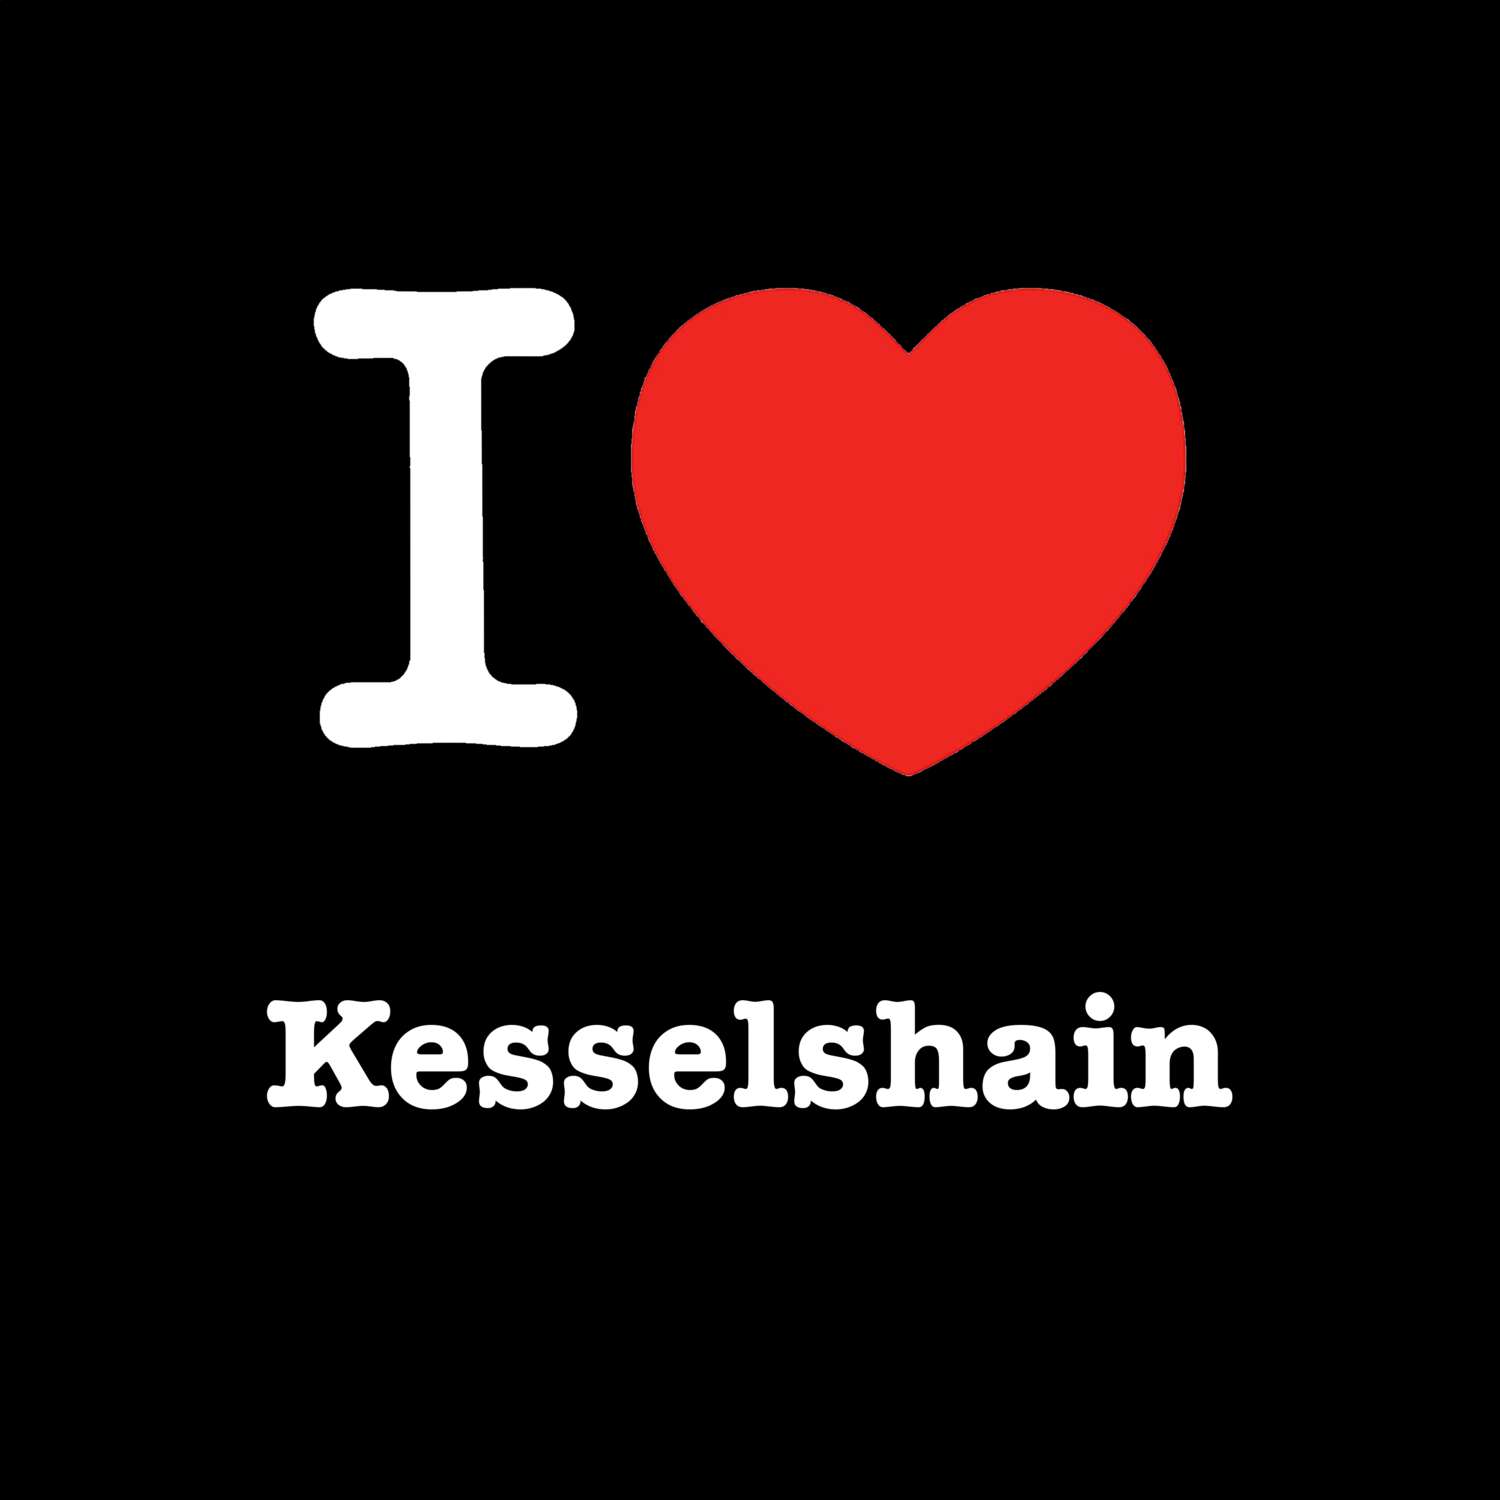 Kesselshain T-Shirt »I love«